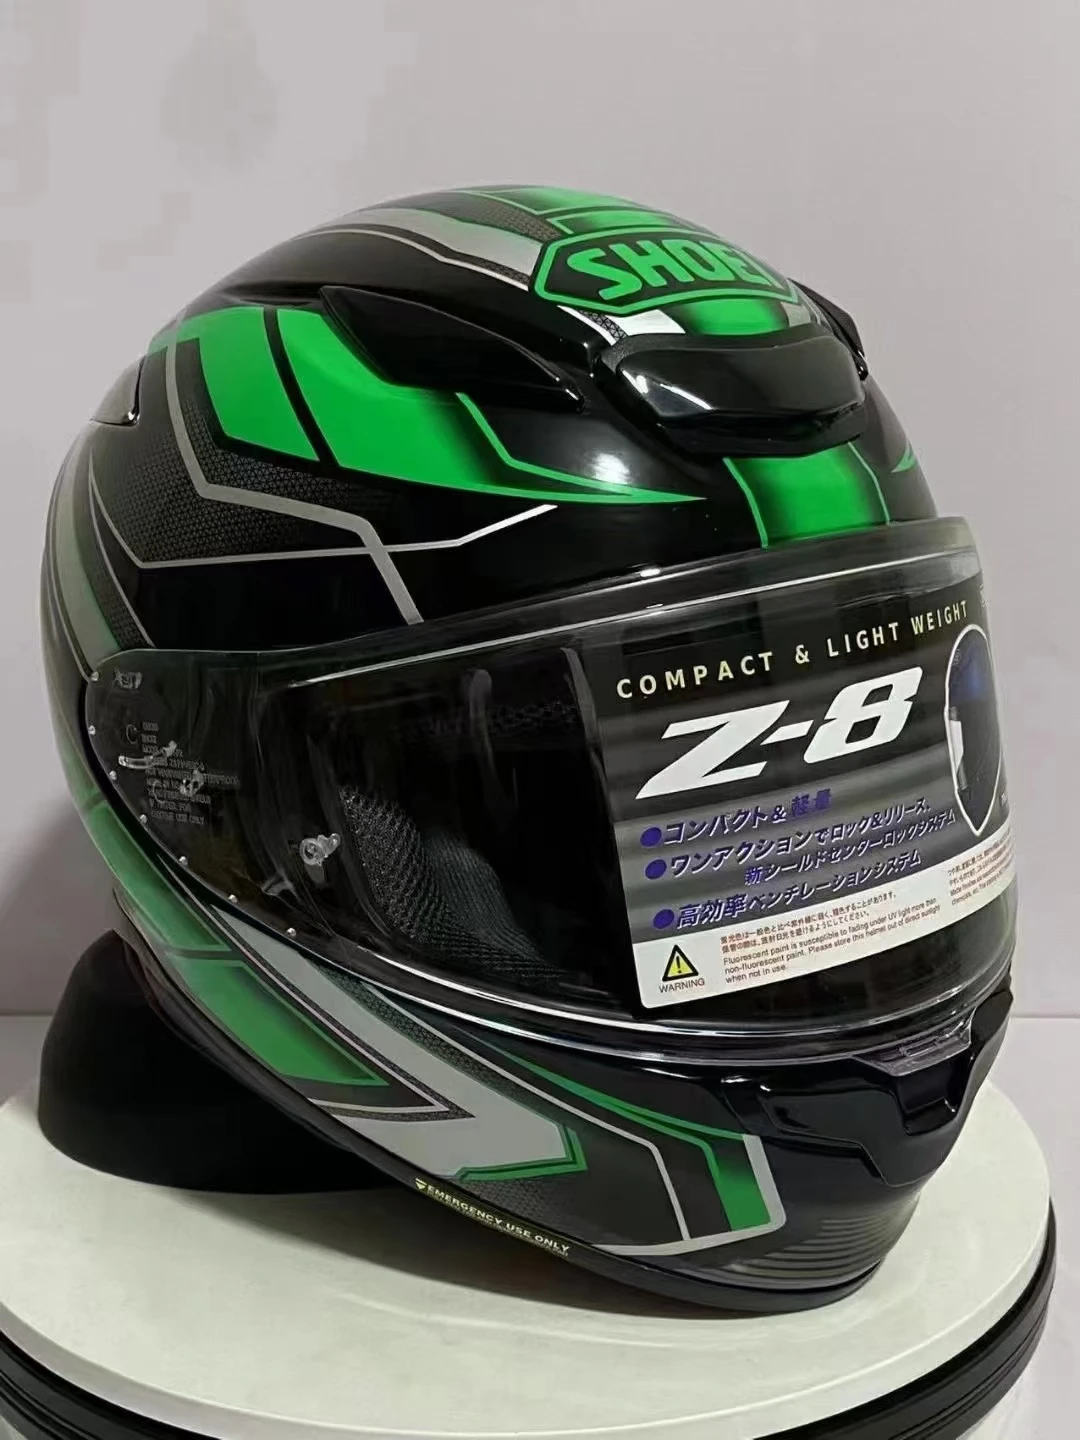 Мотоциклетный шлем SHOEI Z8 ka-wa с полным лицом, зеленый шлем для езды на мотокроссе, шлем для мотобайка Изображение 4